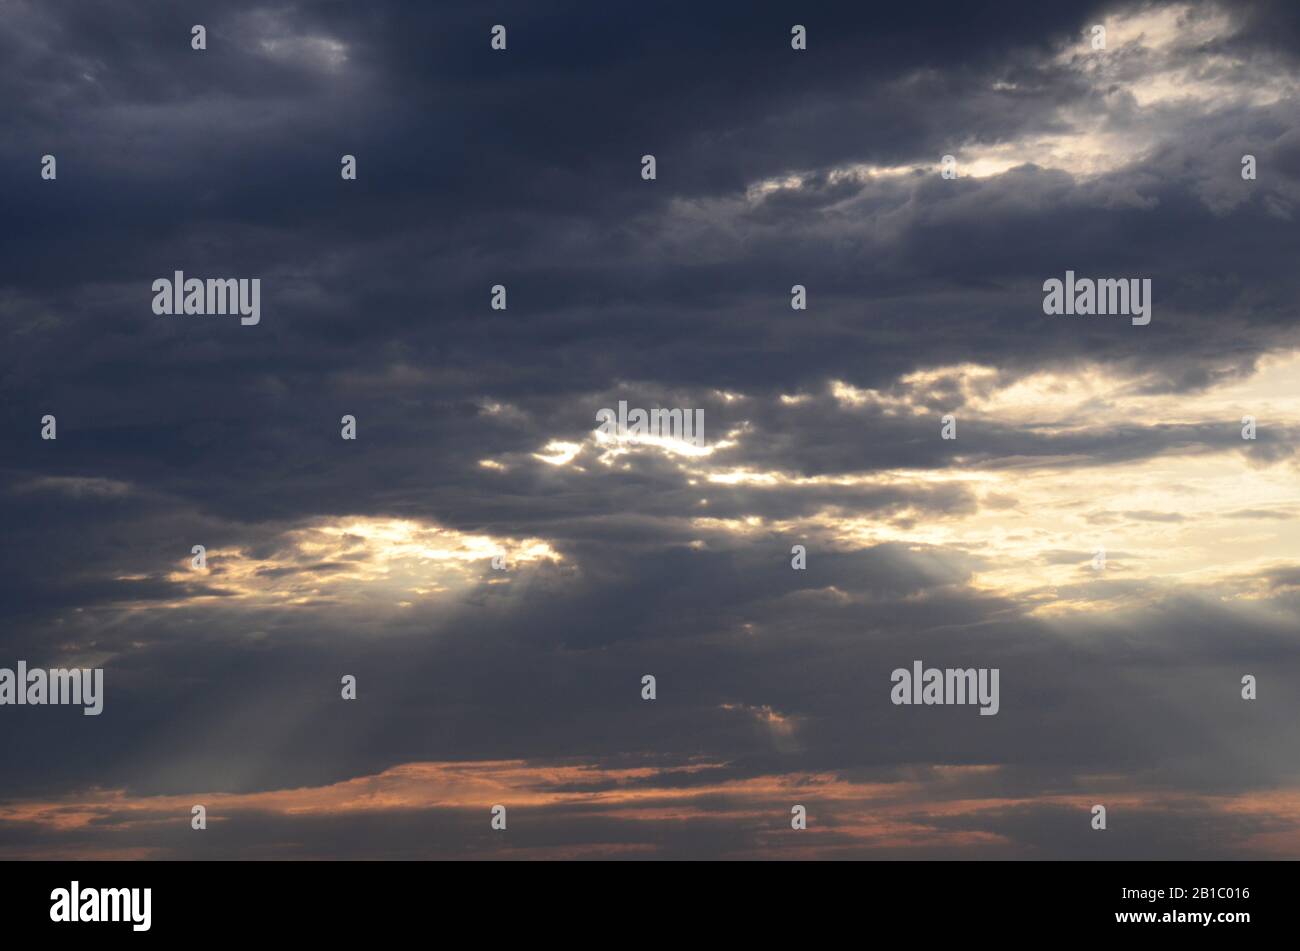 Atlantische LICHTER: Sonnenaufgang im Juni über der Absecon Bucht in der atlantischen Stadt, New Jersey. Stockfoto